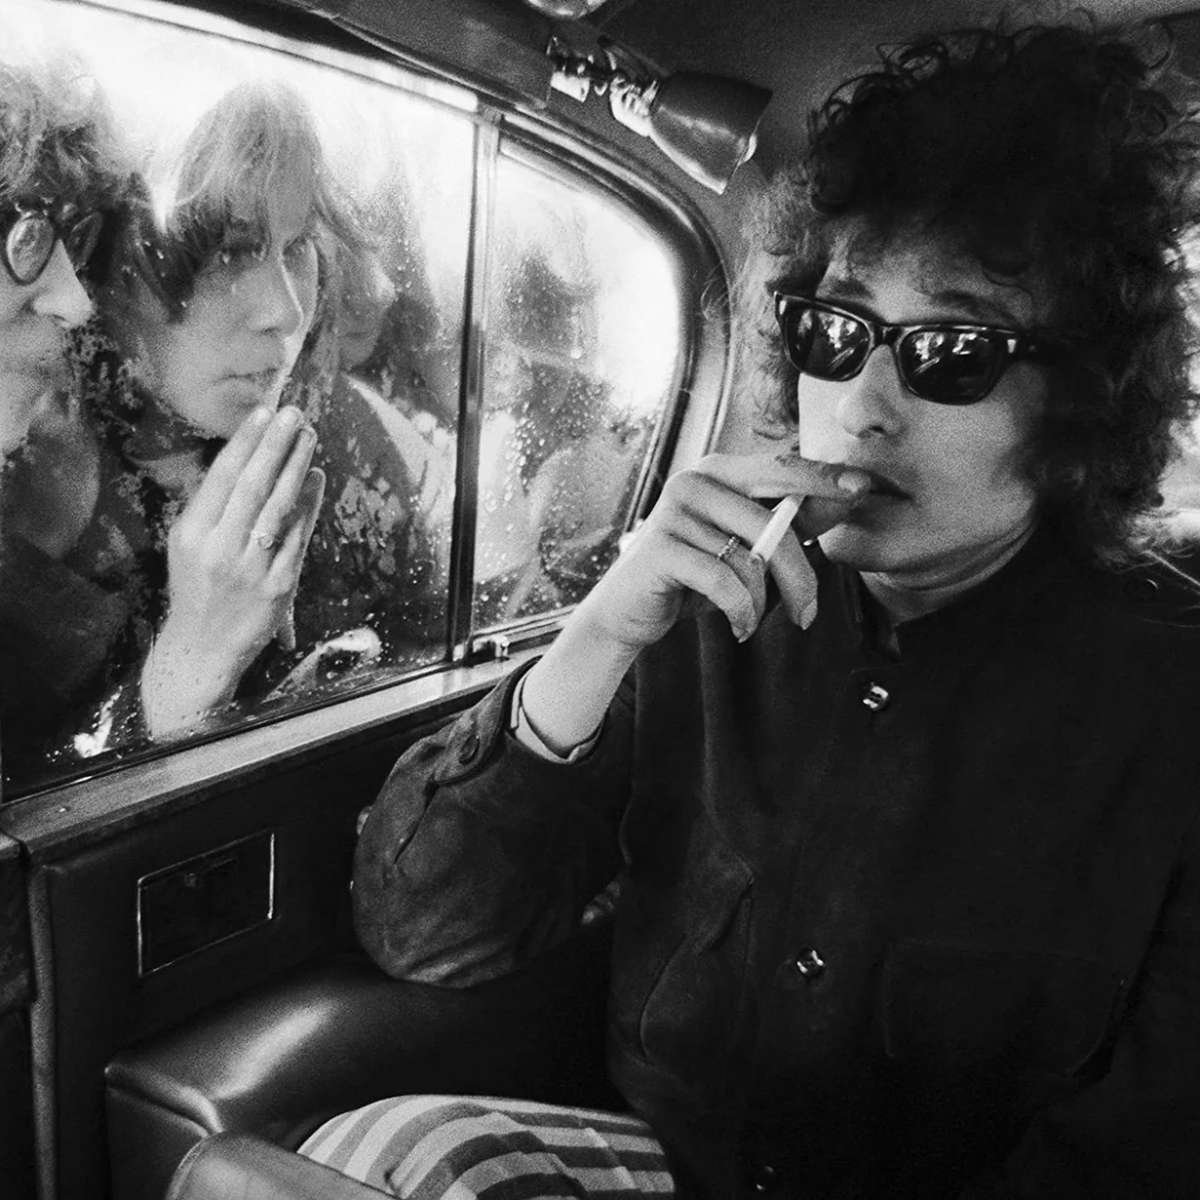 Fotografía de Bob Dylan incluida en el libro.